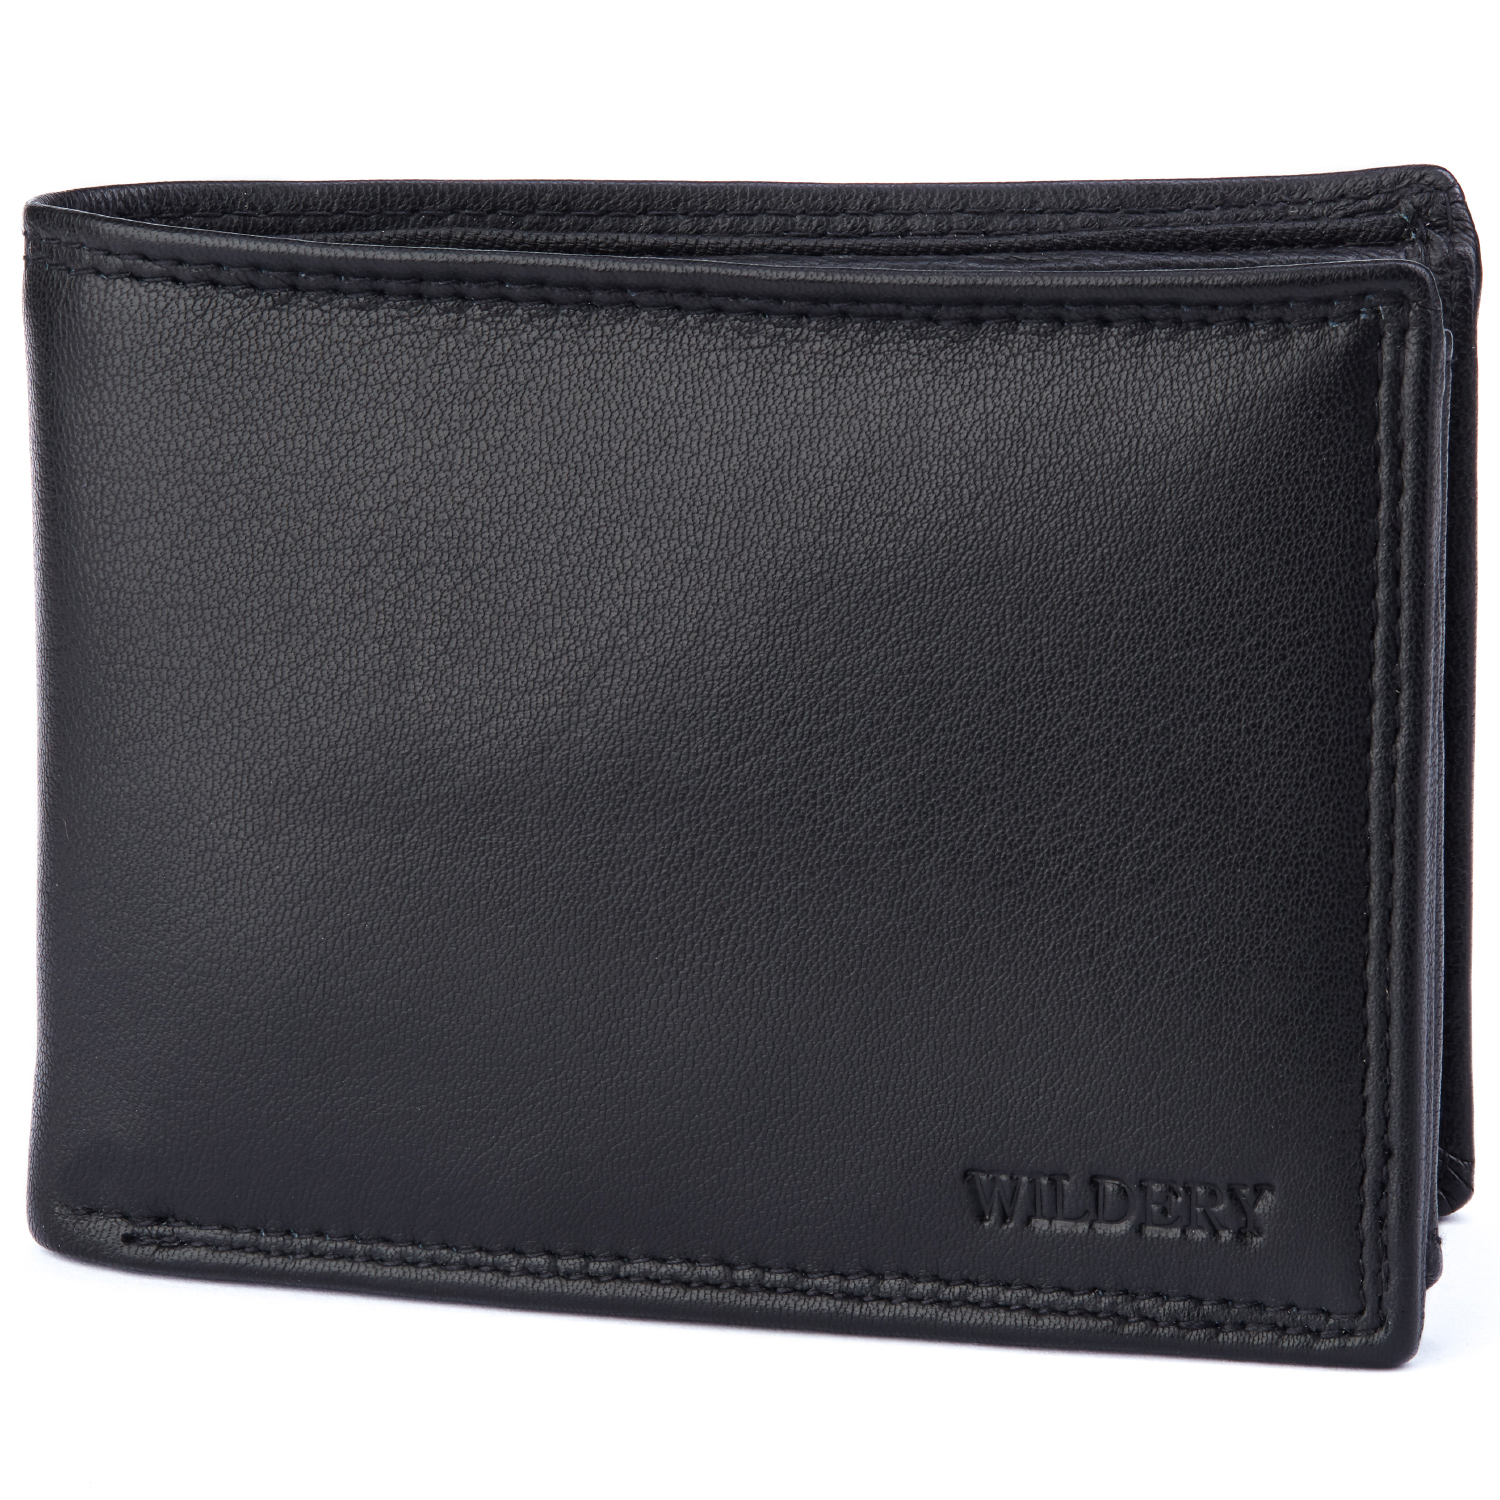 Herren Geldbörse mit RFID und NFC Schutz im Querformat in schlichtem schwarz